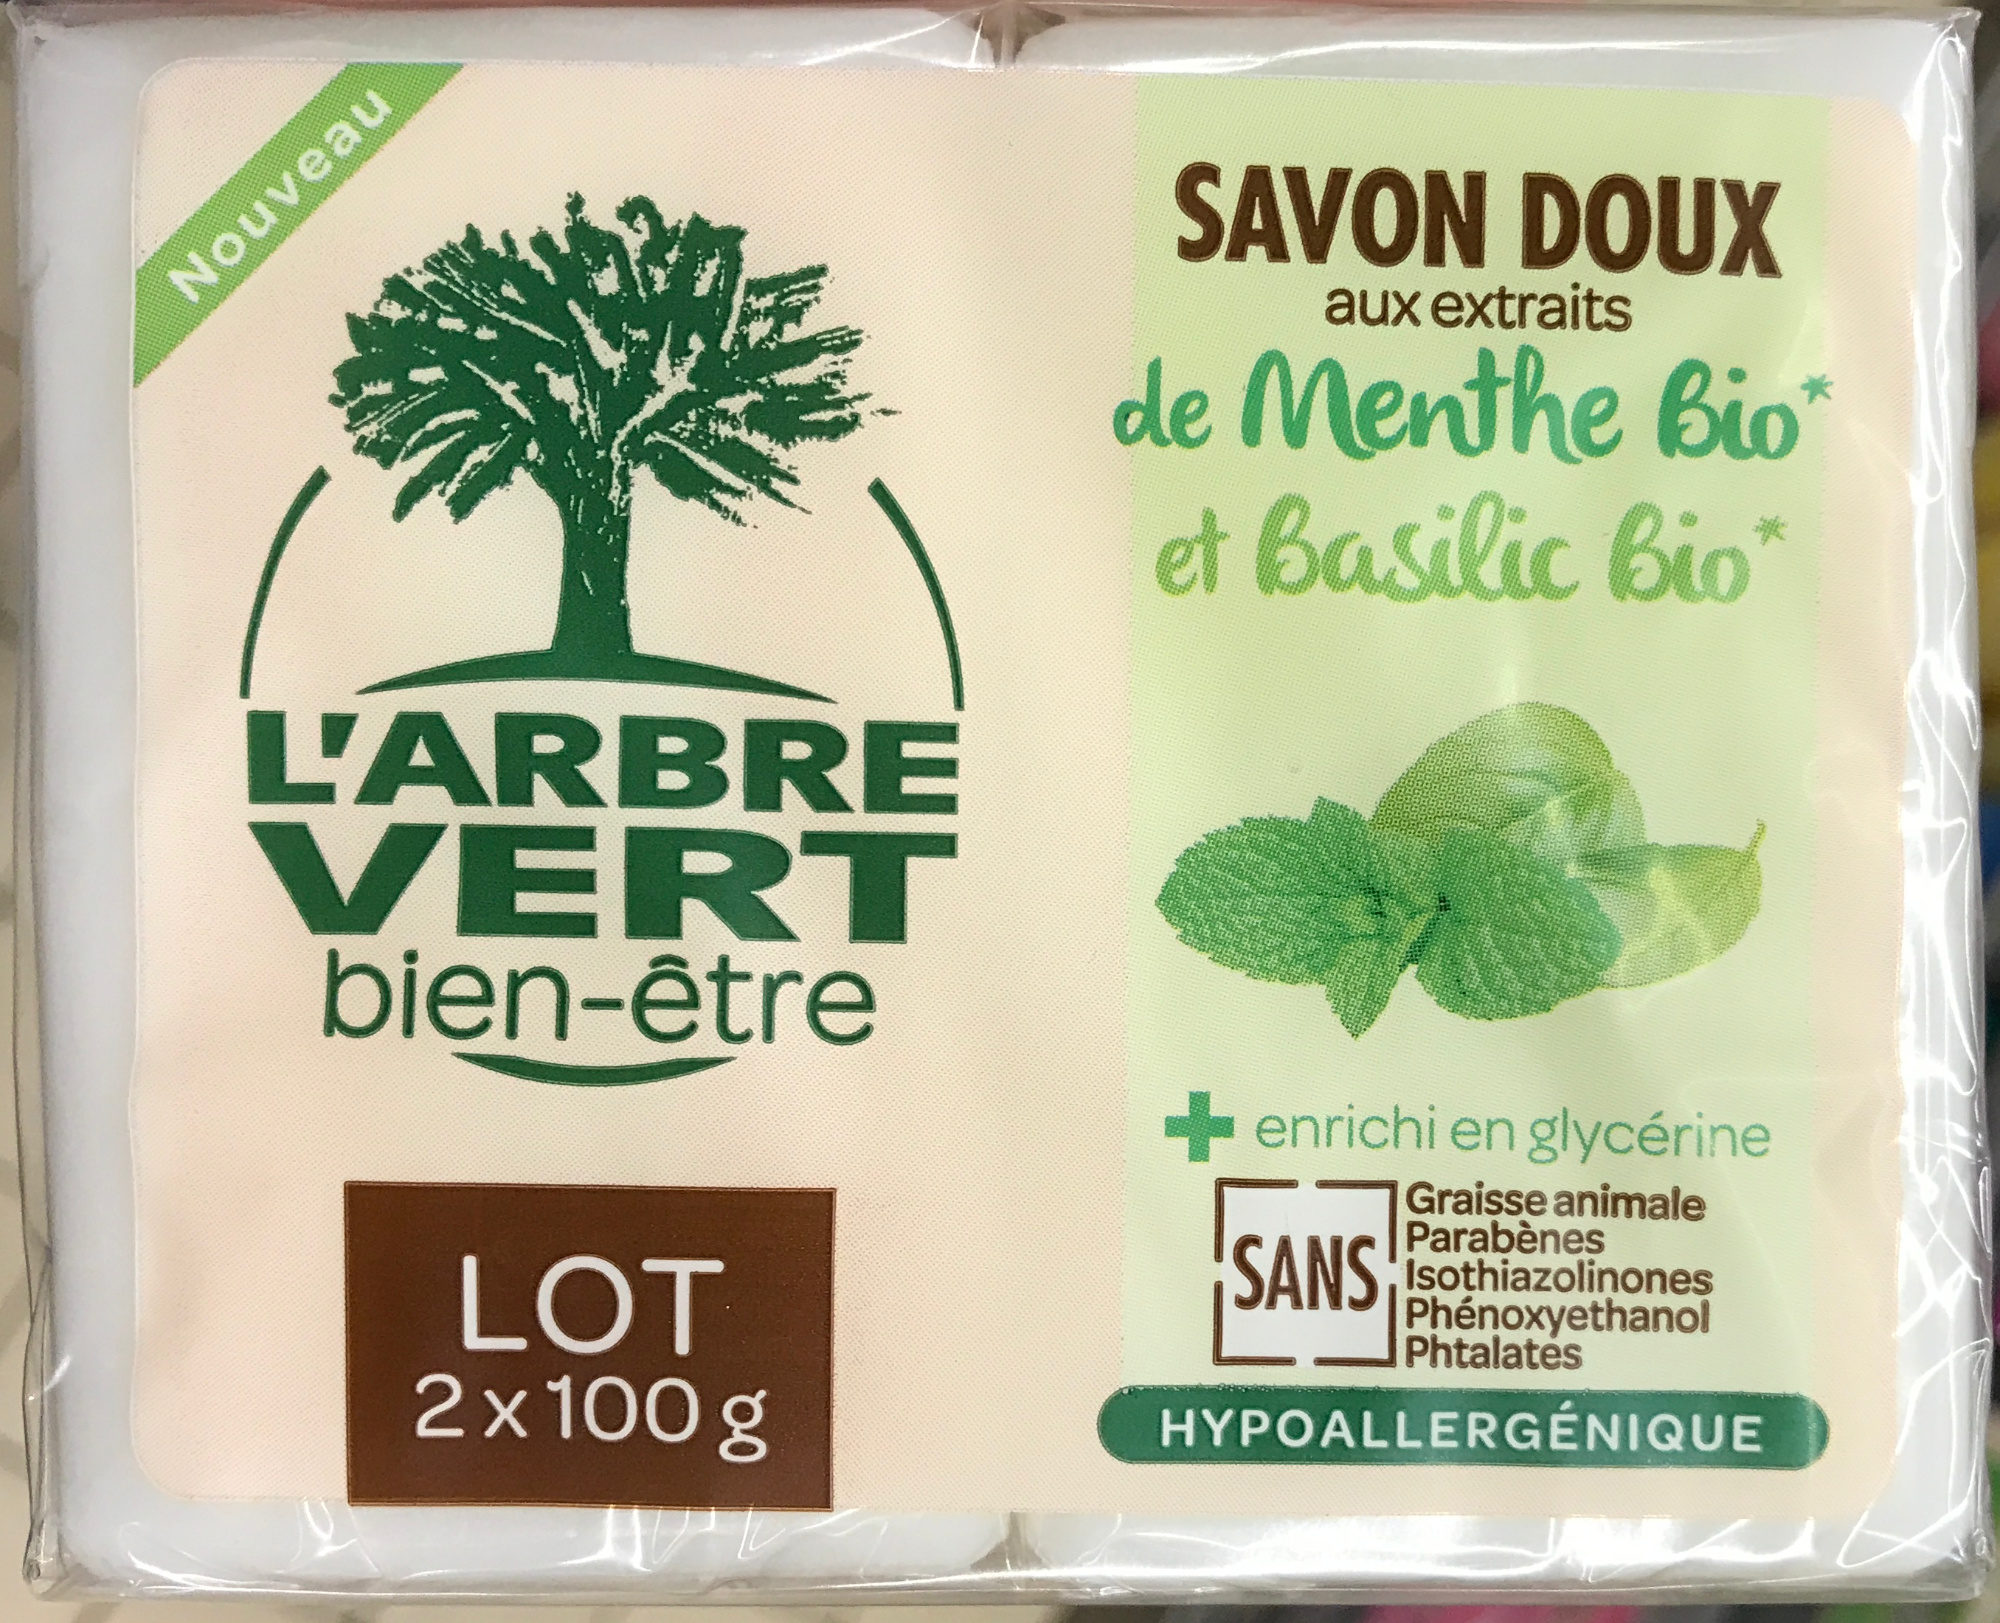 Savon Doux aux extraits de Menthe Bio et Basilic Bio (Lot de 2) - Product - fr